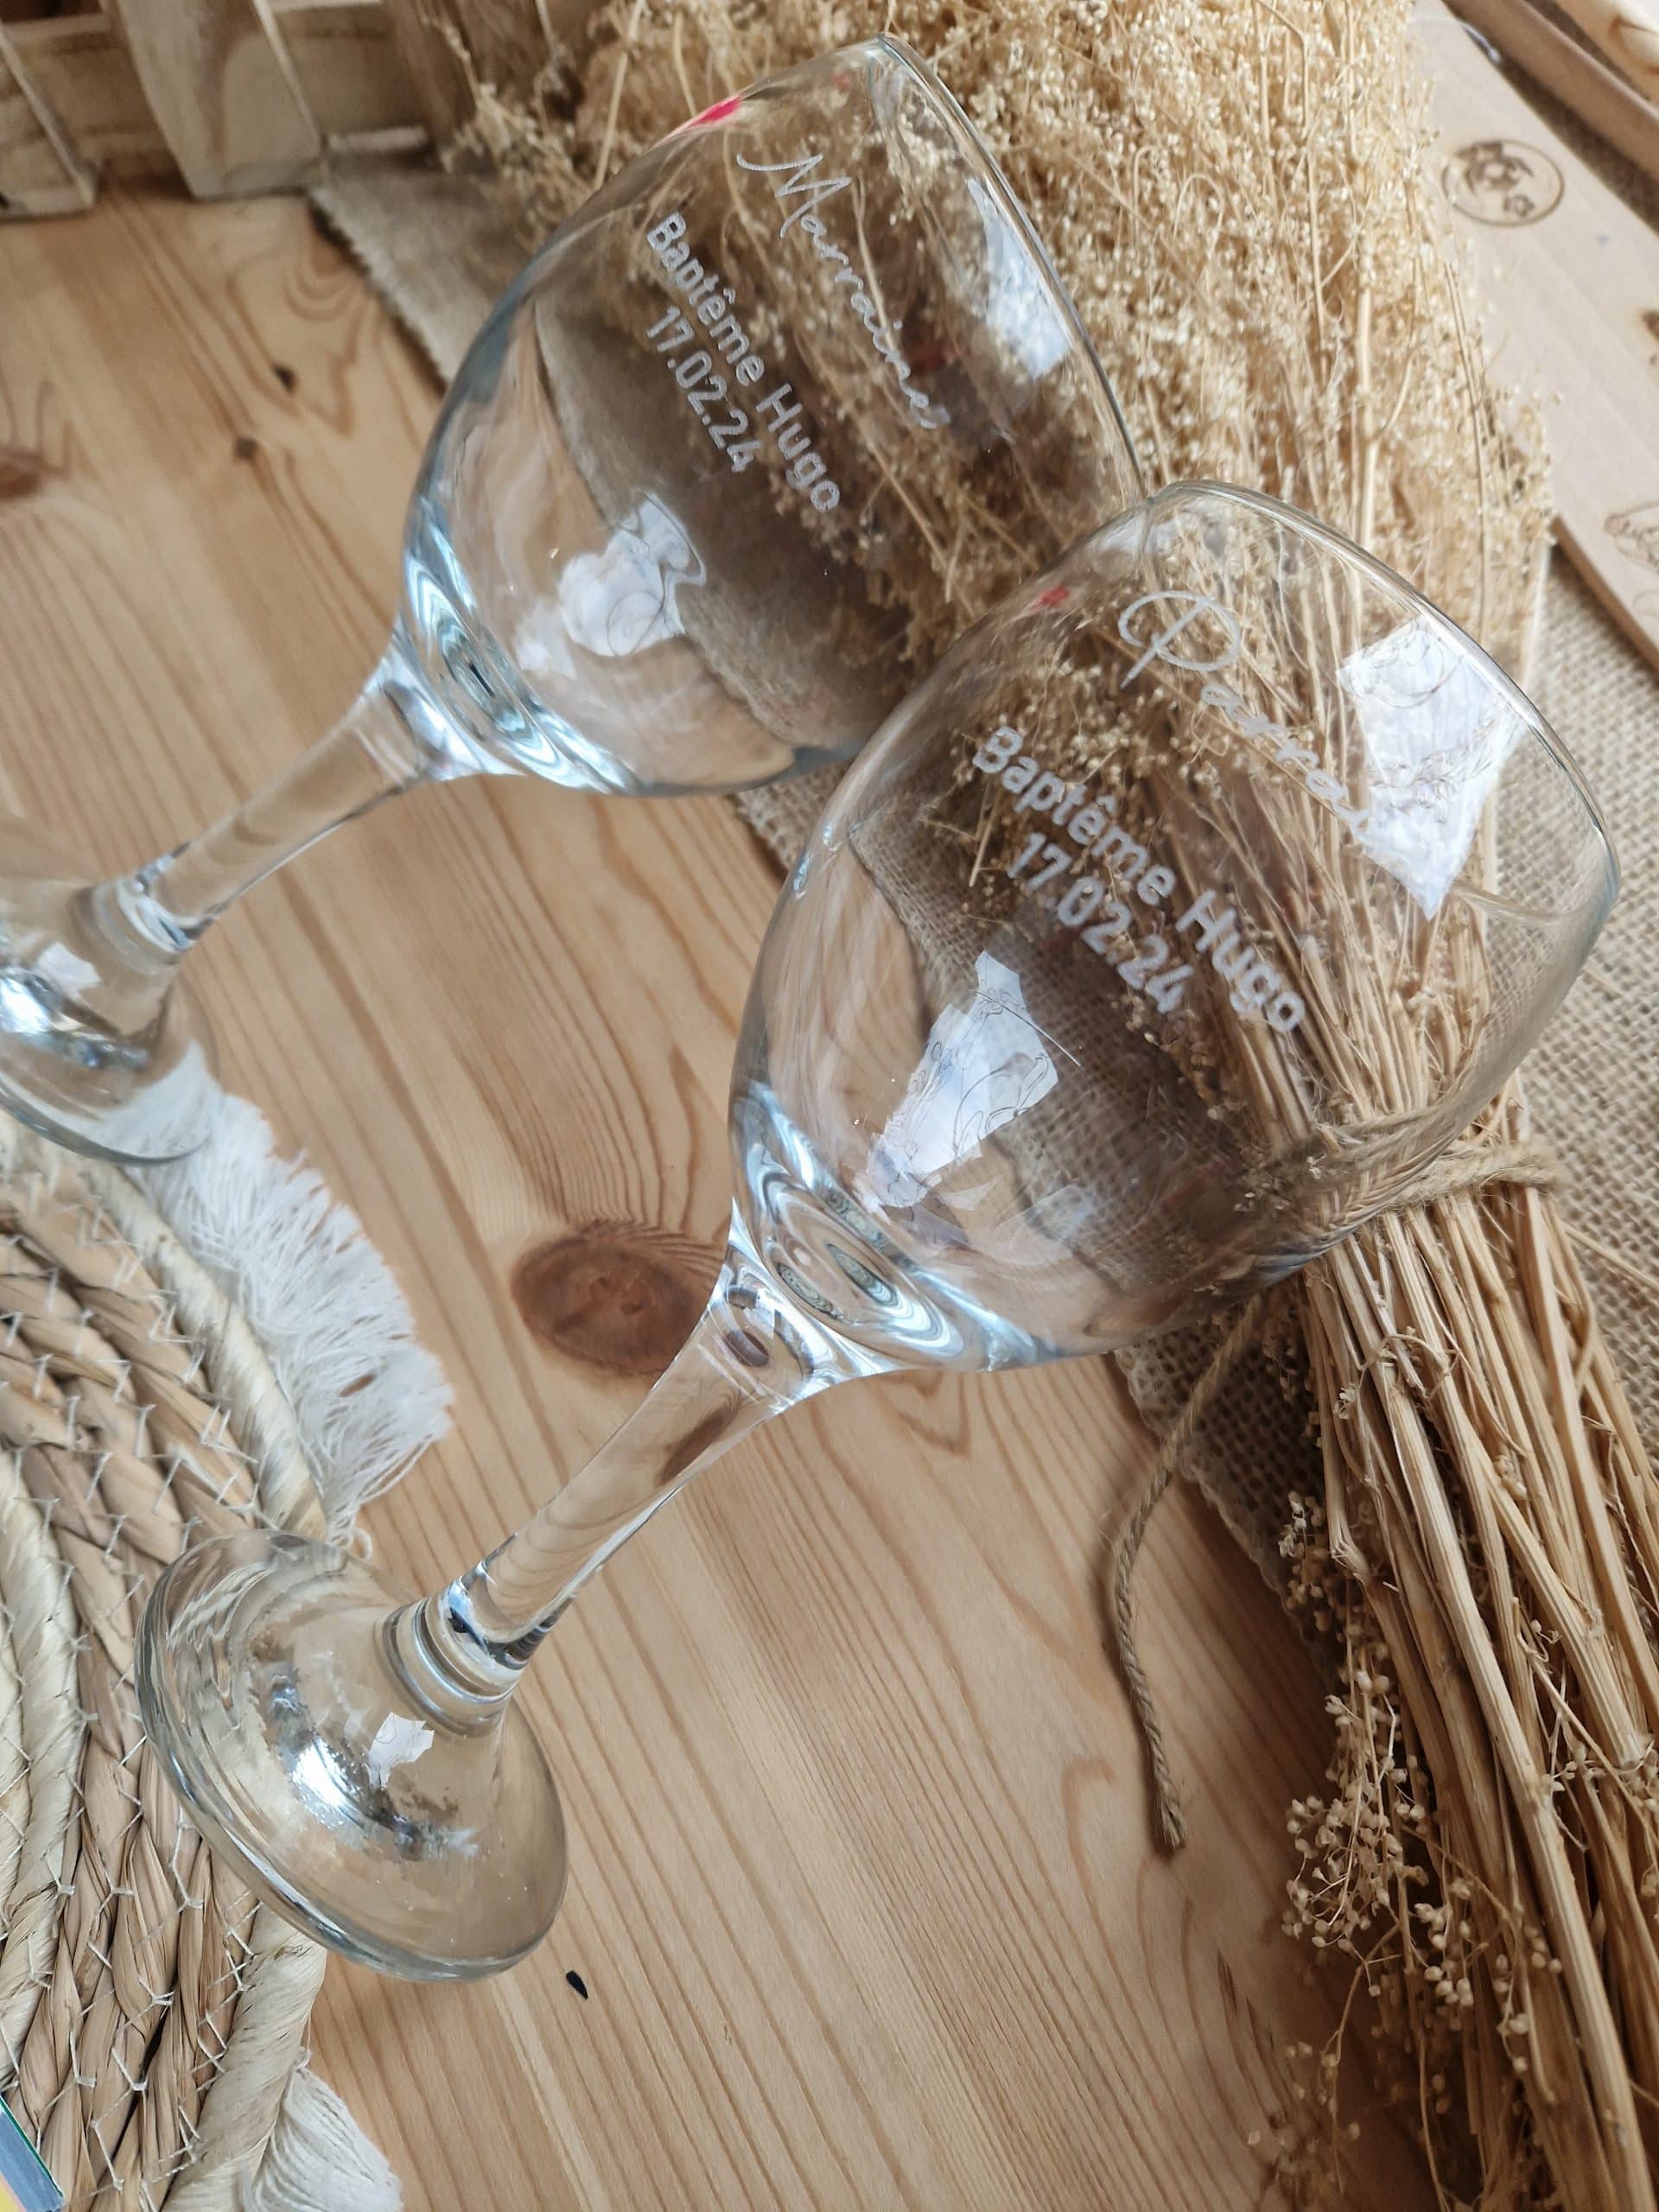 Verre personnalisé verre marraine et parrain Gravure sur verre mariage-Verre  Ricard, vin ou bière Gravure prénom Envoi offert en relay -  France